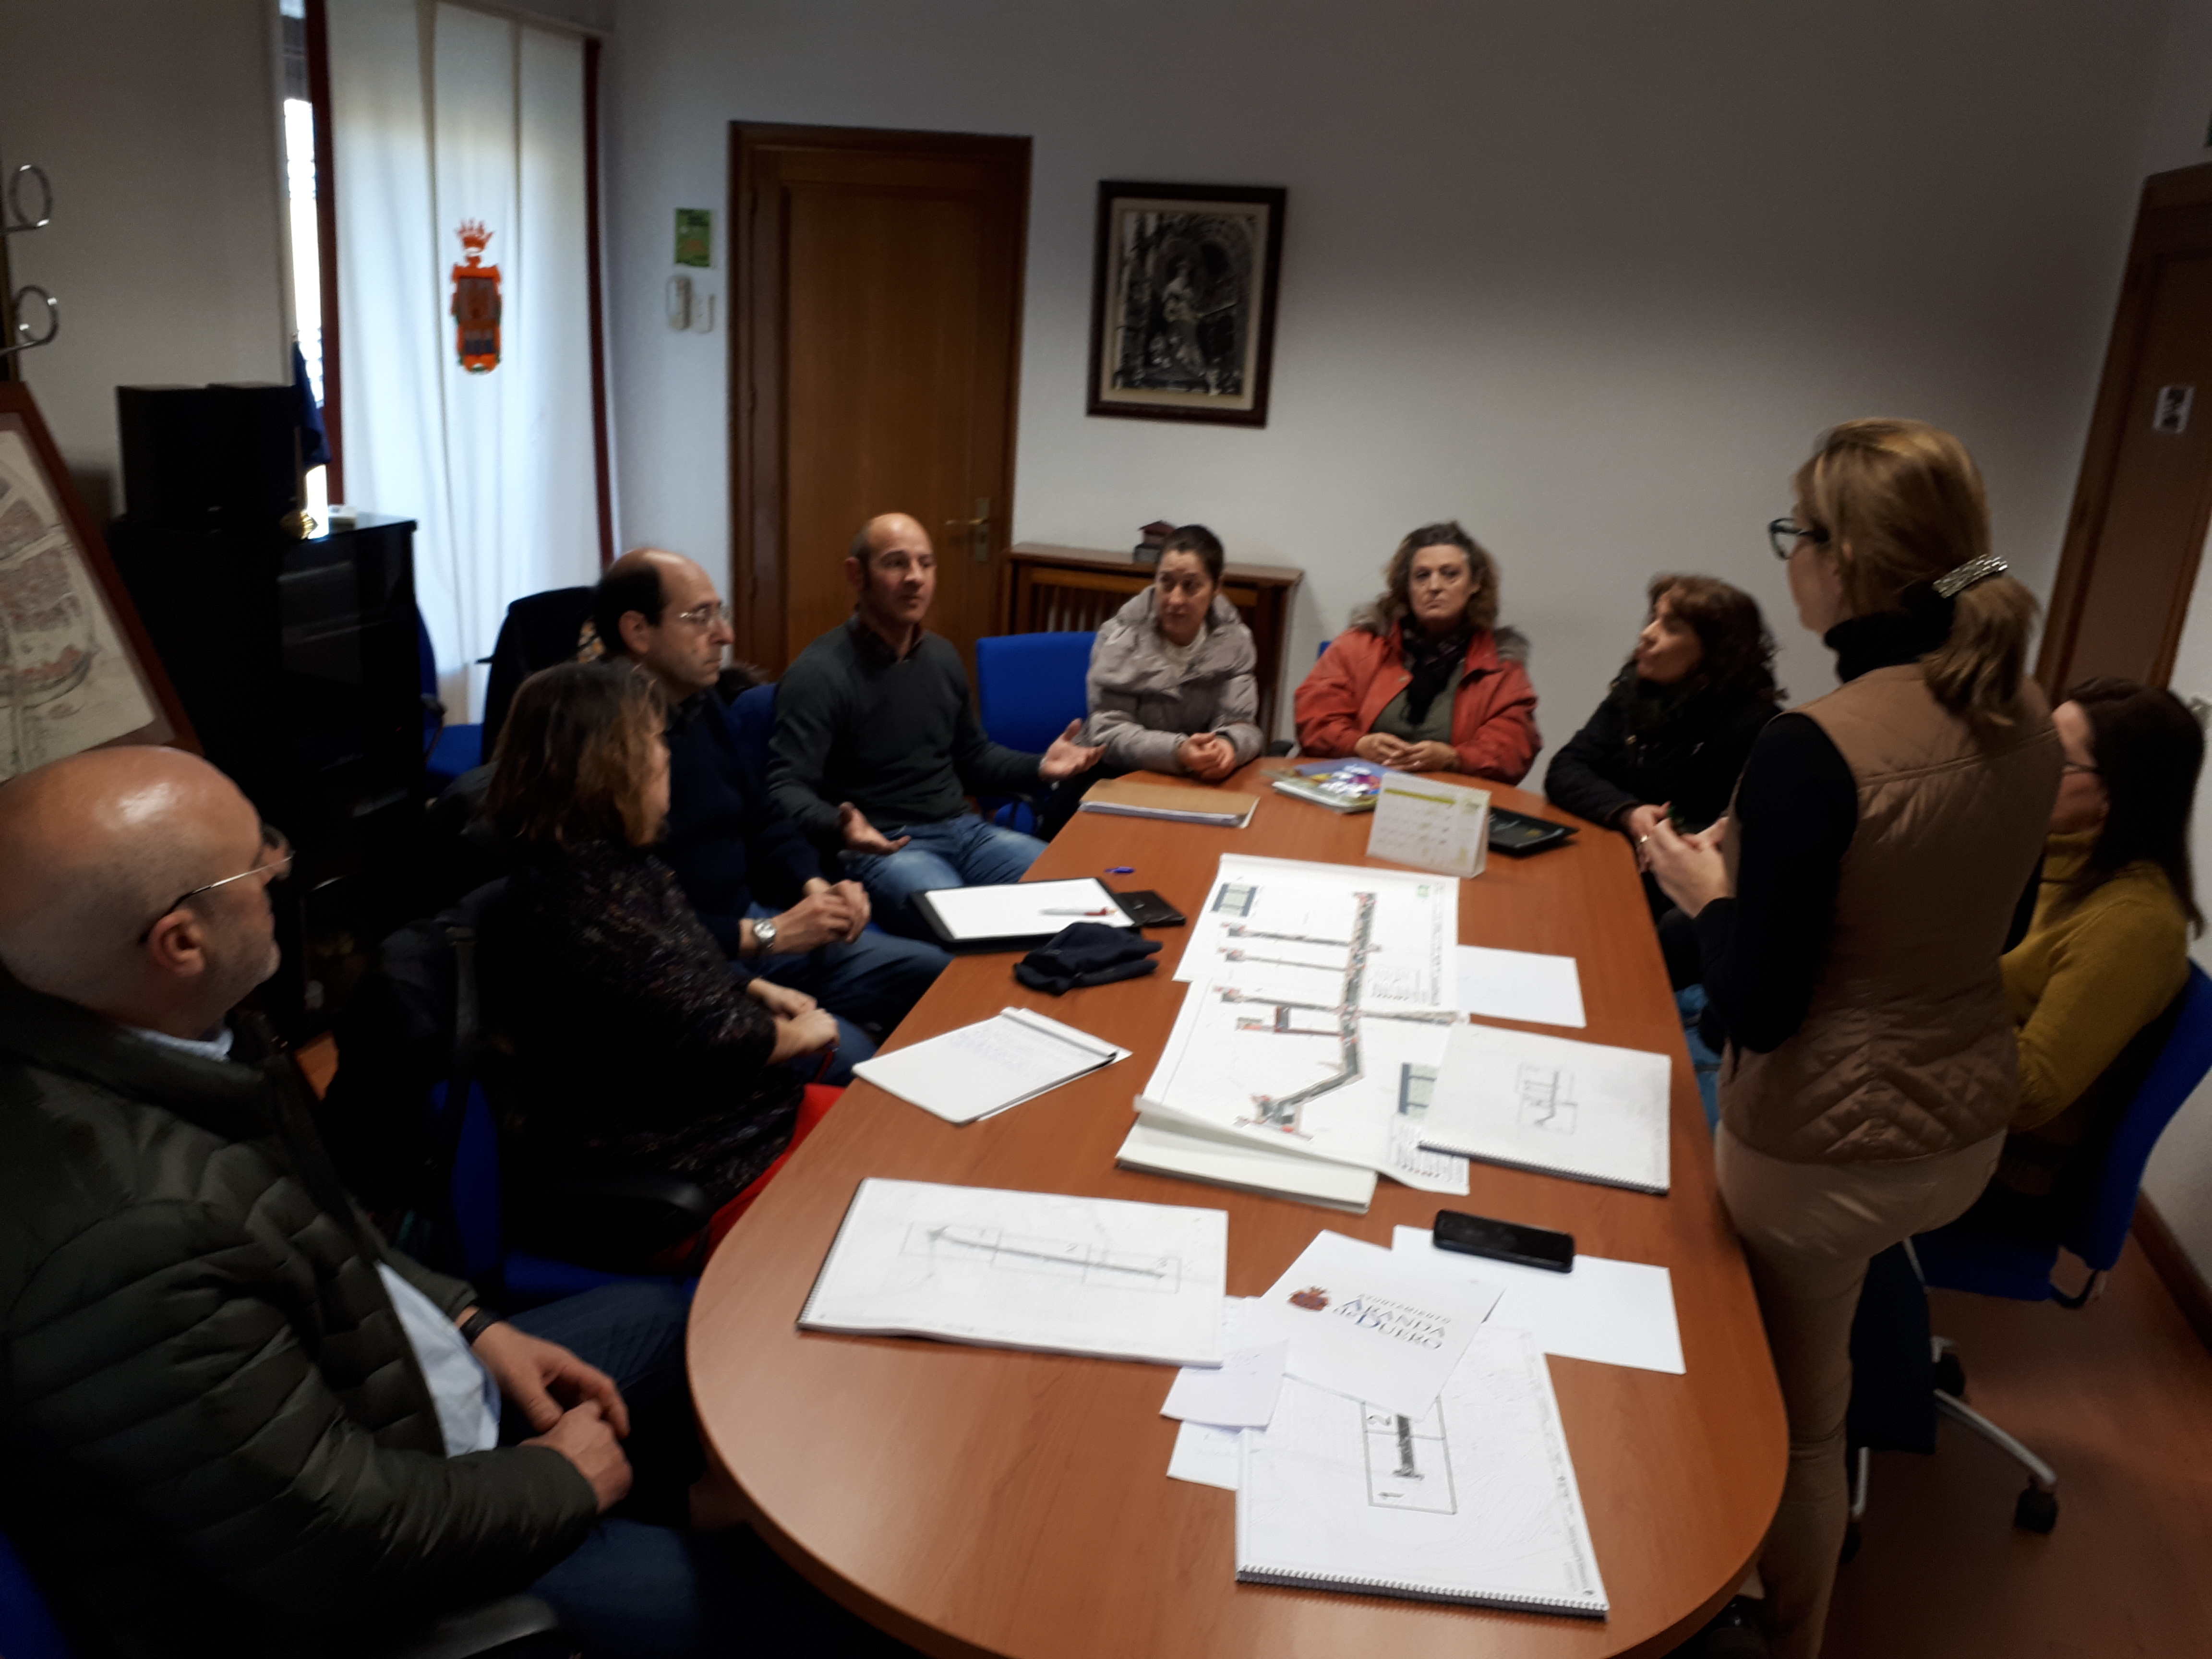 Reunión con los representantes de la asociación de vecinos del barrio Ferial Bañuelos en el Ayuntamiento el 9 de febrero de 2018